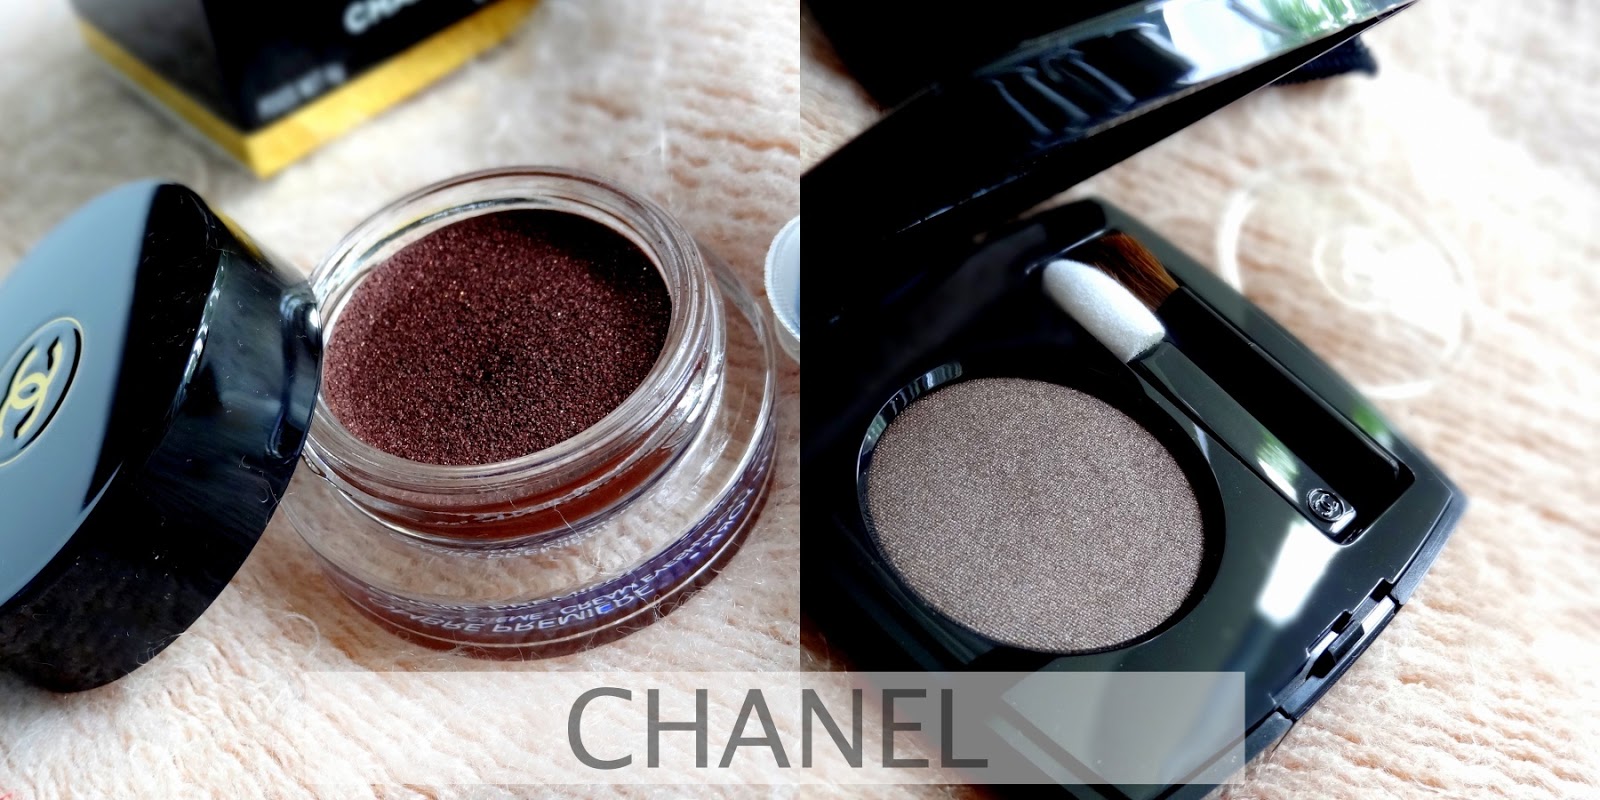  Ombre Premiere Long Wear Powder Eyeshadow by Chanel